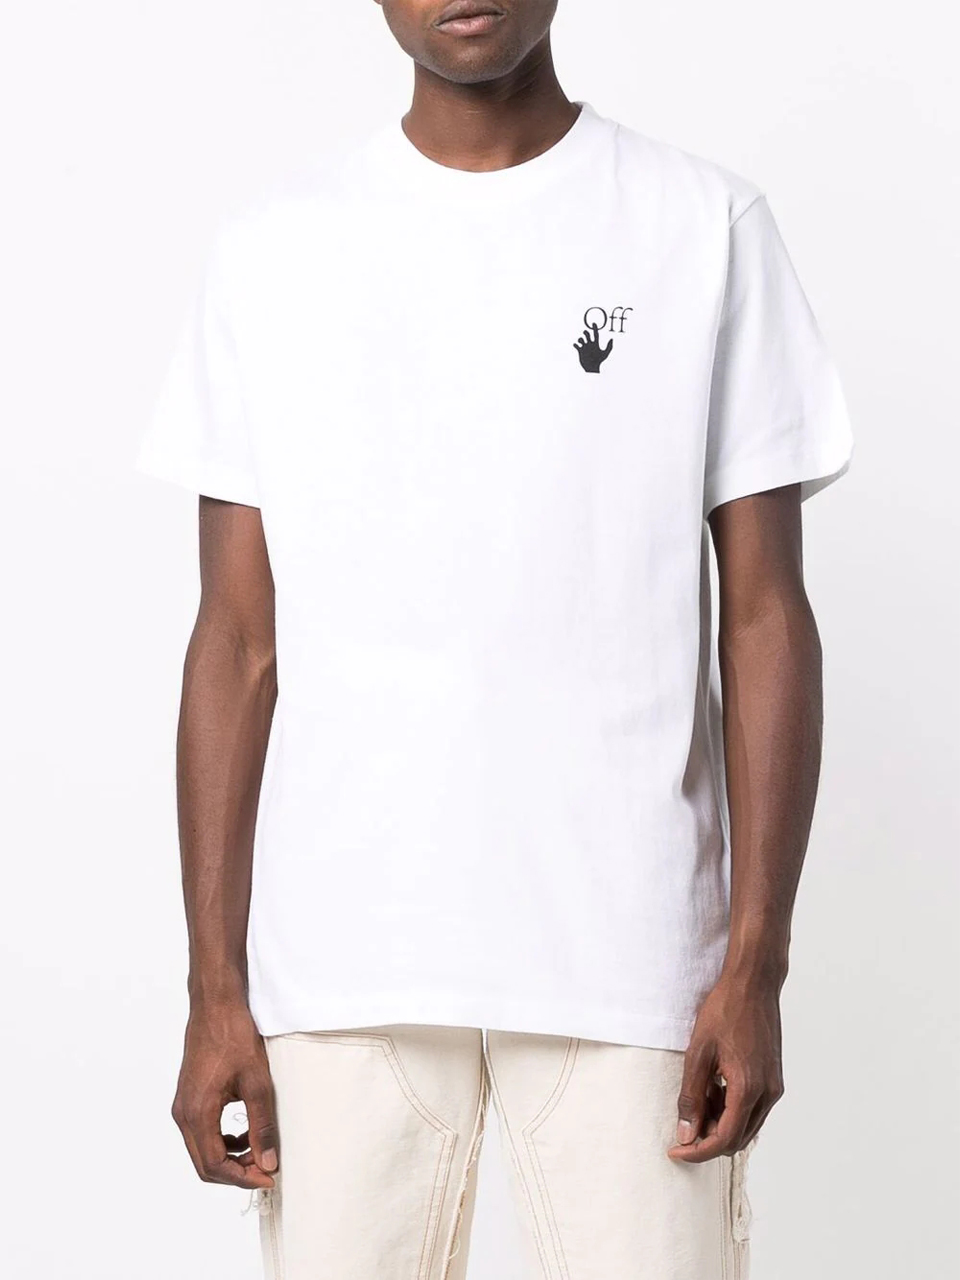 Imagem de: Camiseta Off-White Branca com Estampa Setas